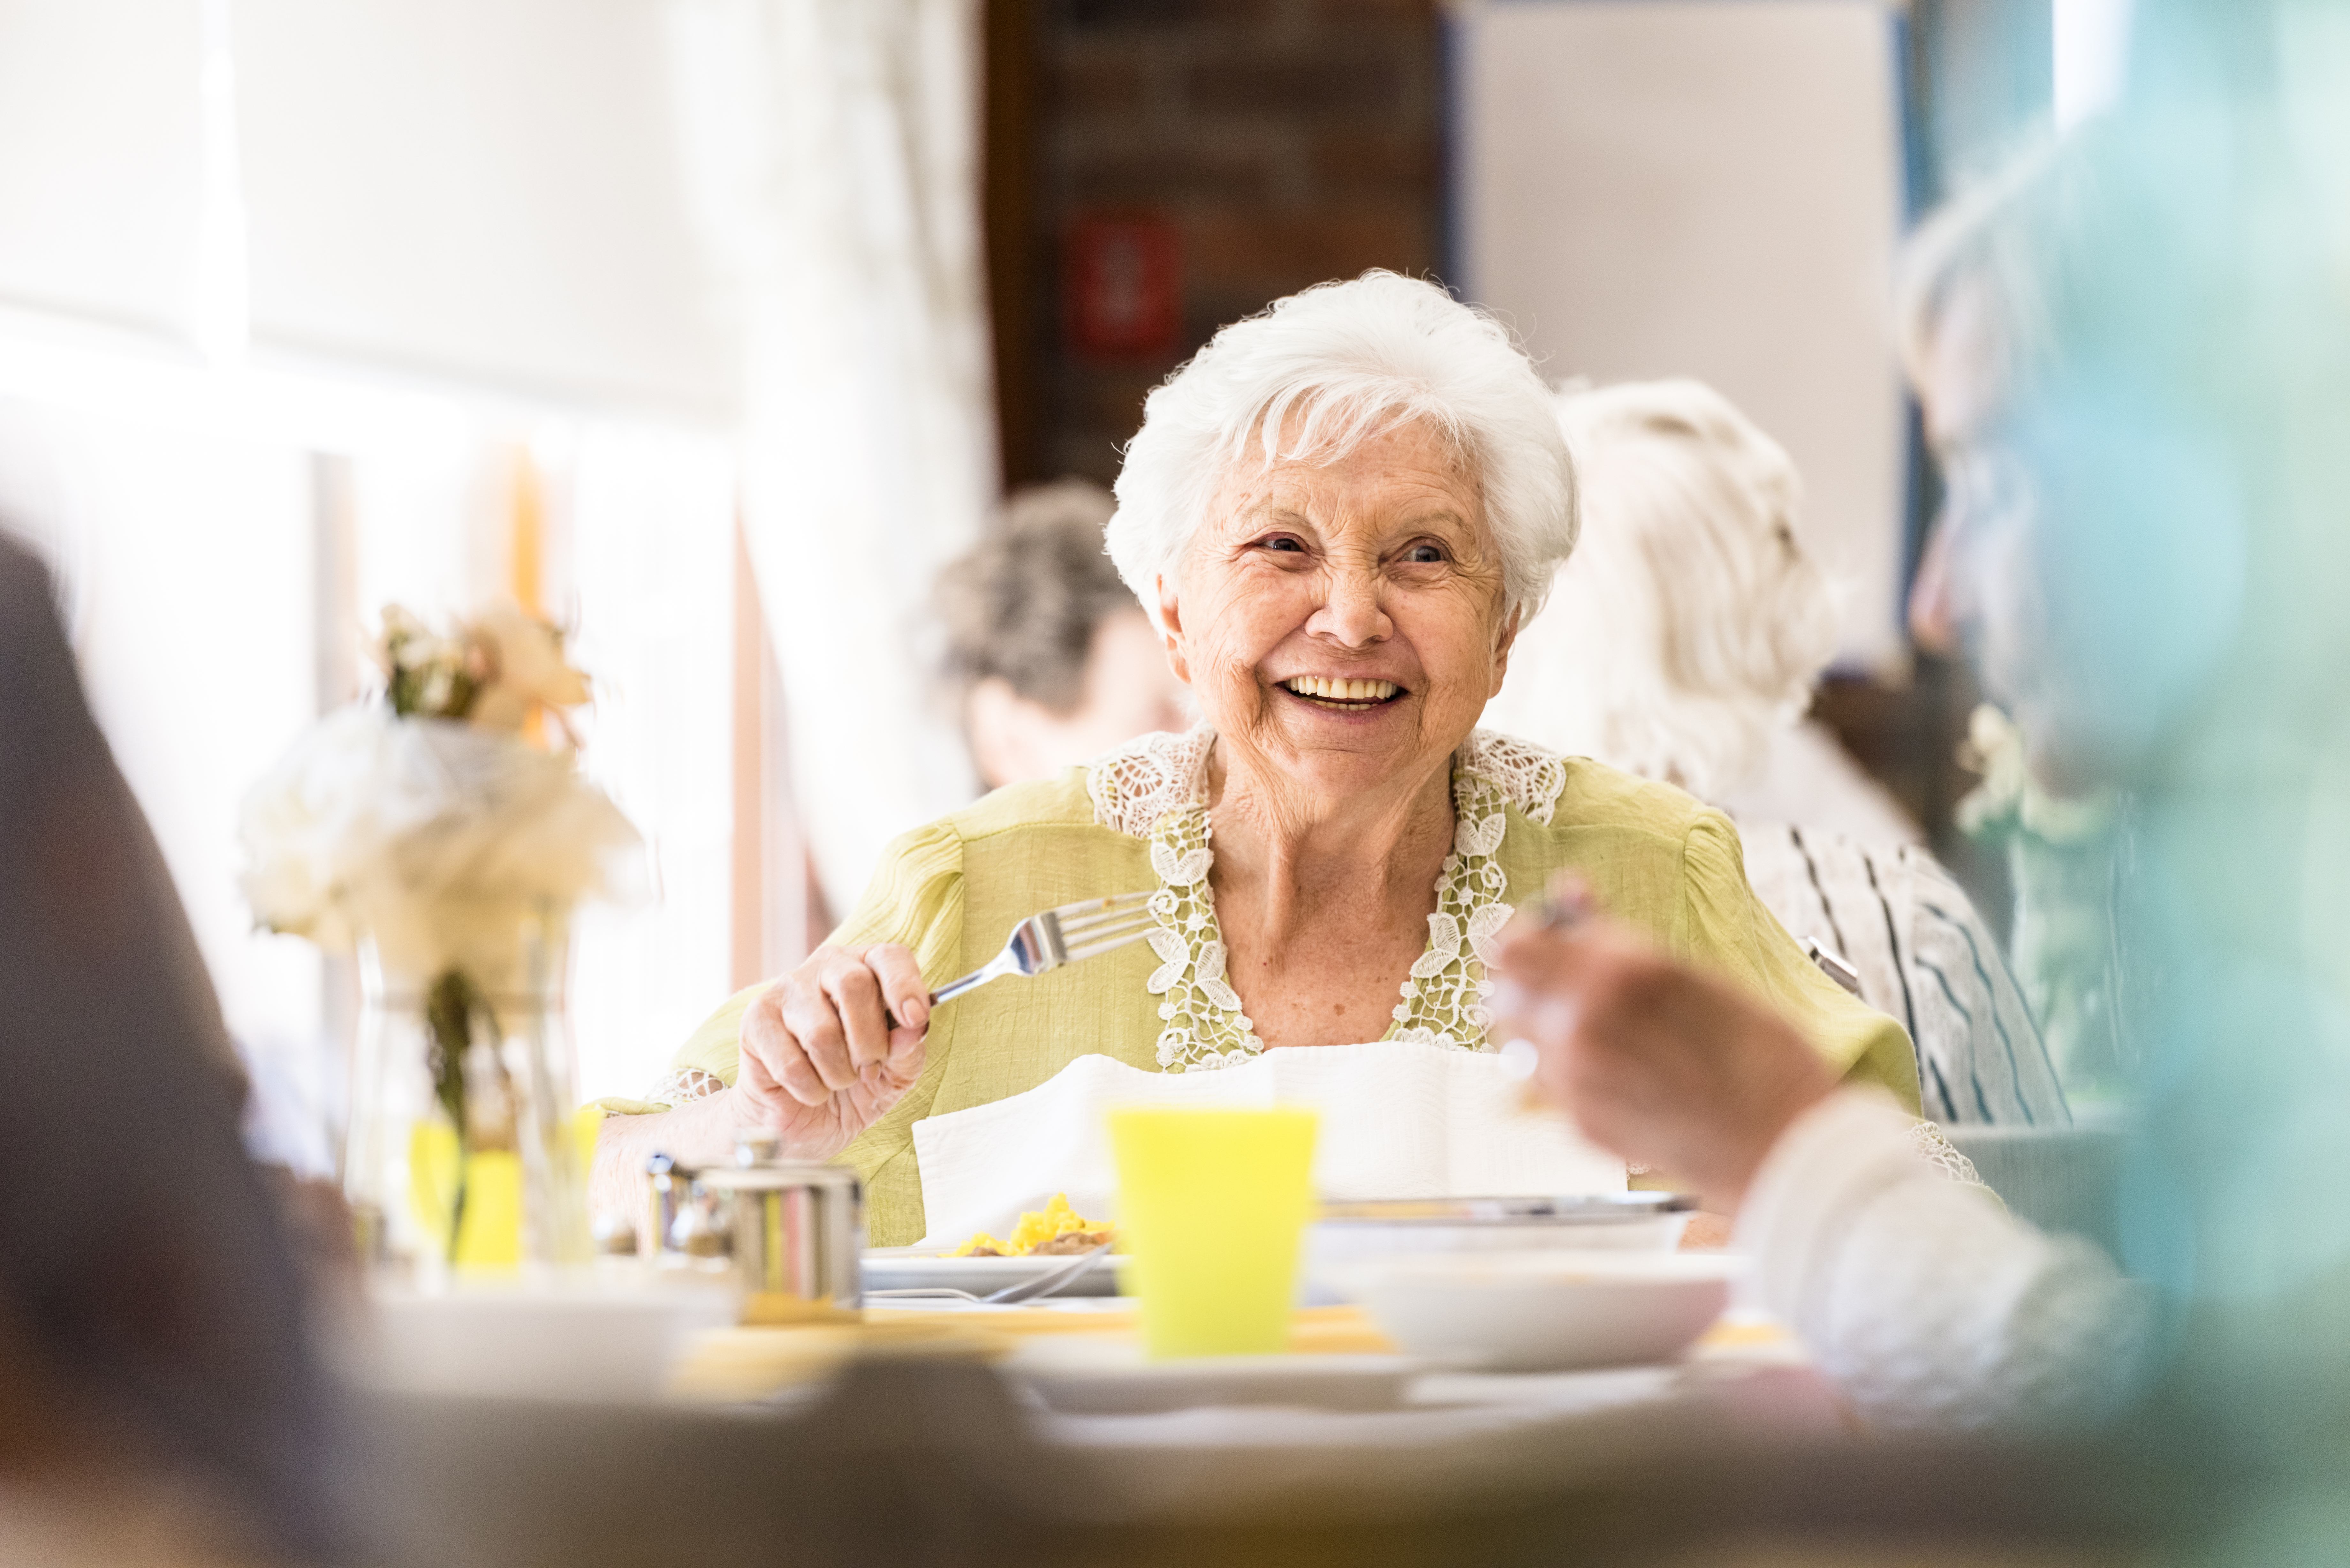 Äldre dam med vitt hår skrattar. Hon håller i en sked och framför henne står en skål. Hon har en gul blus på sig med blommor.